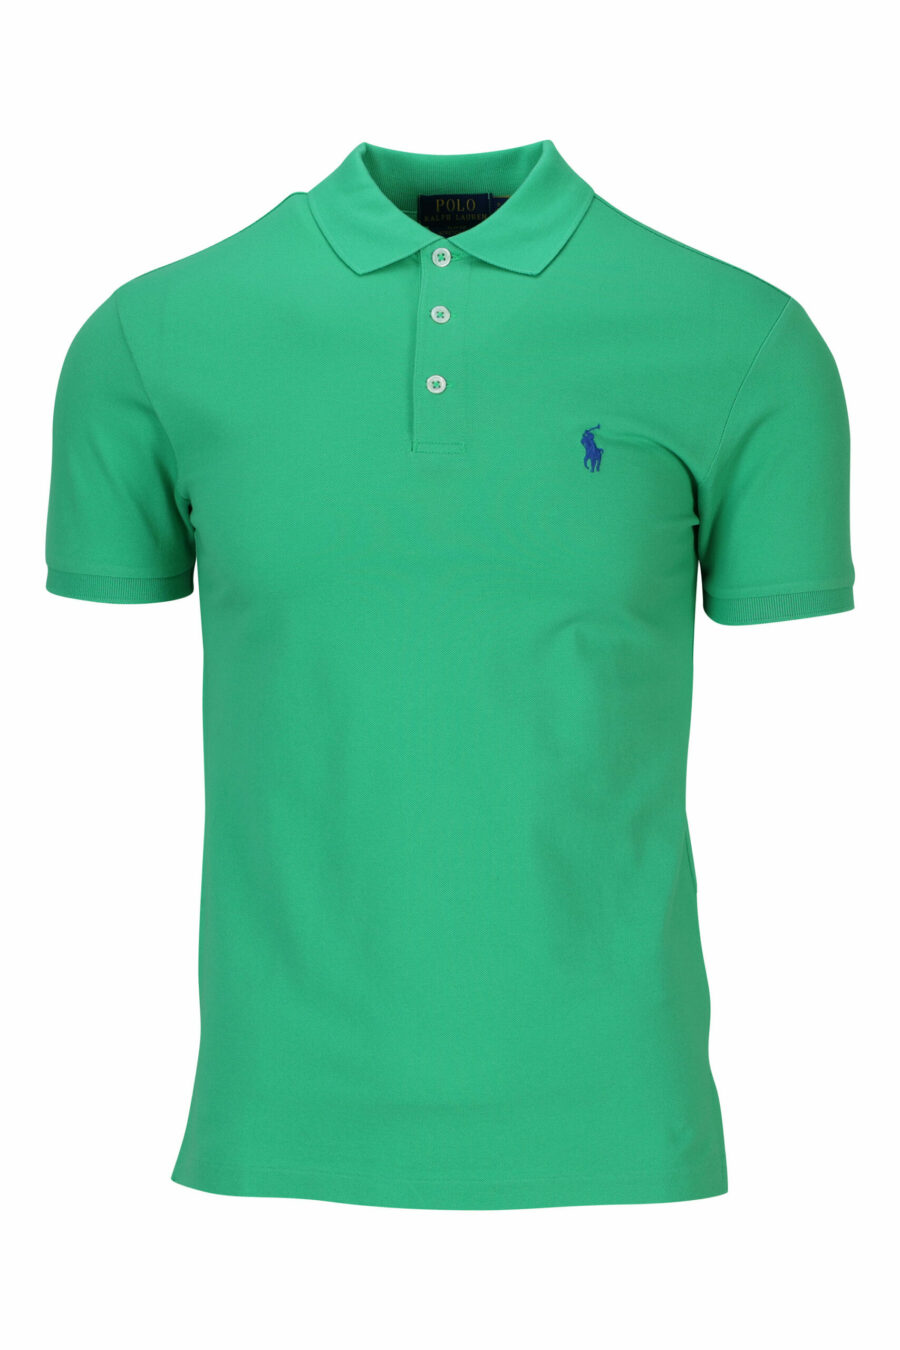 T-shirt verde e azul com mini-logotipo "polo" - 3616535909687 scaled